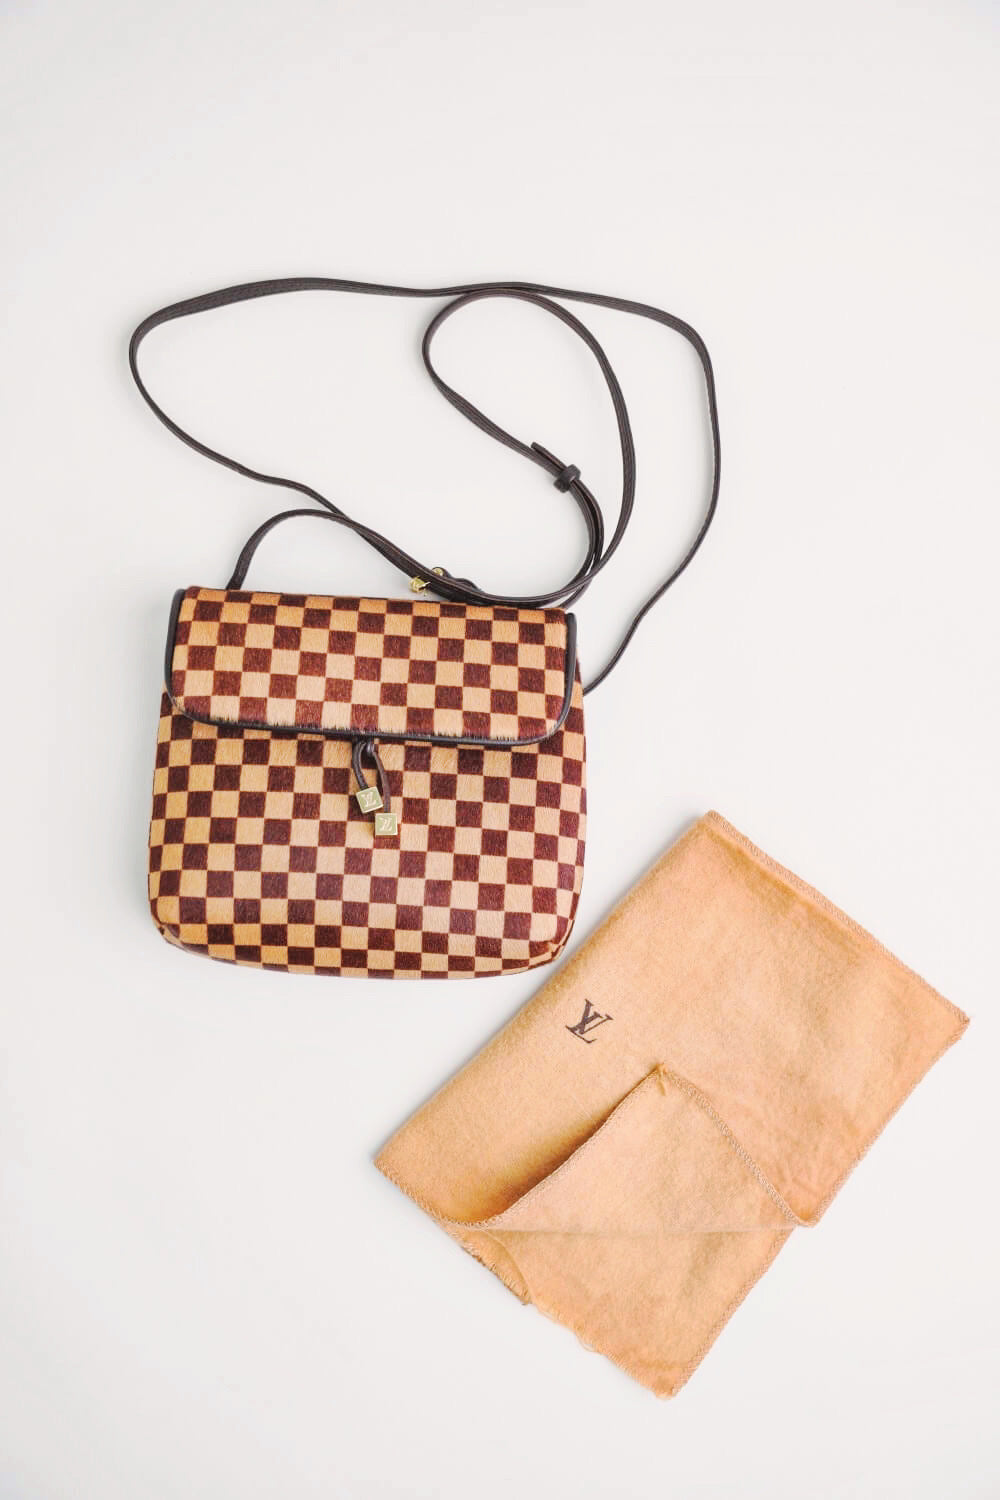 Louis Vuitton Damier Sauvage Handbag